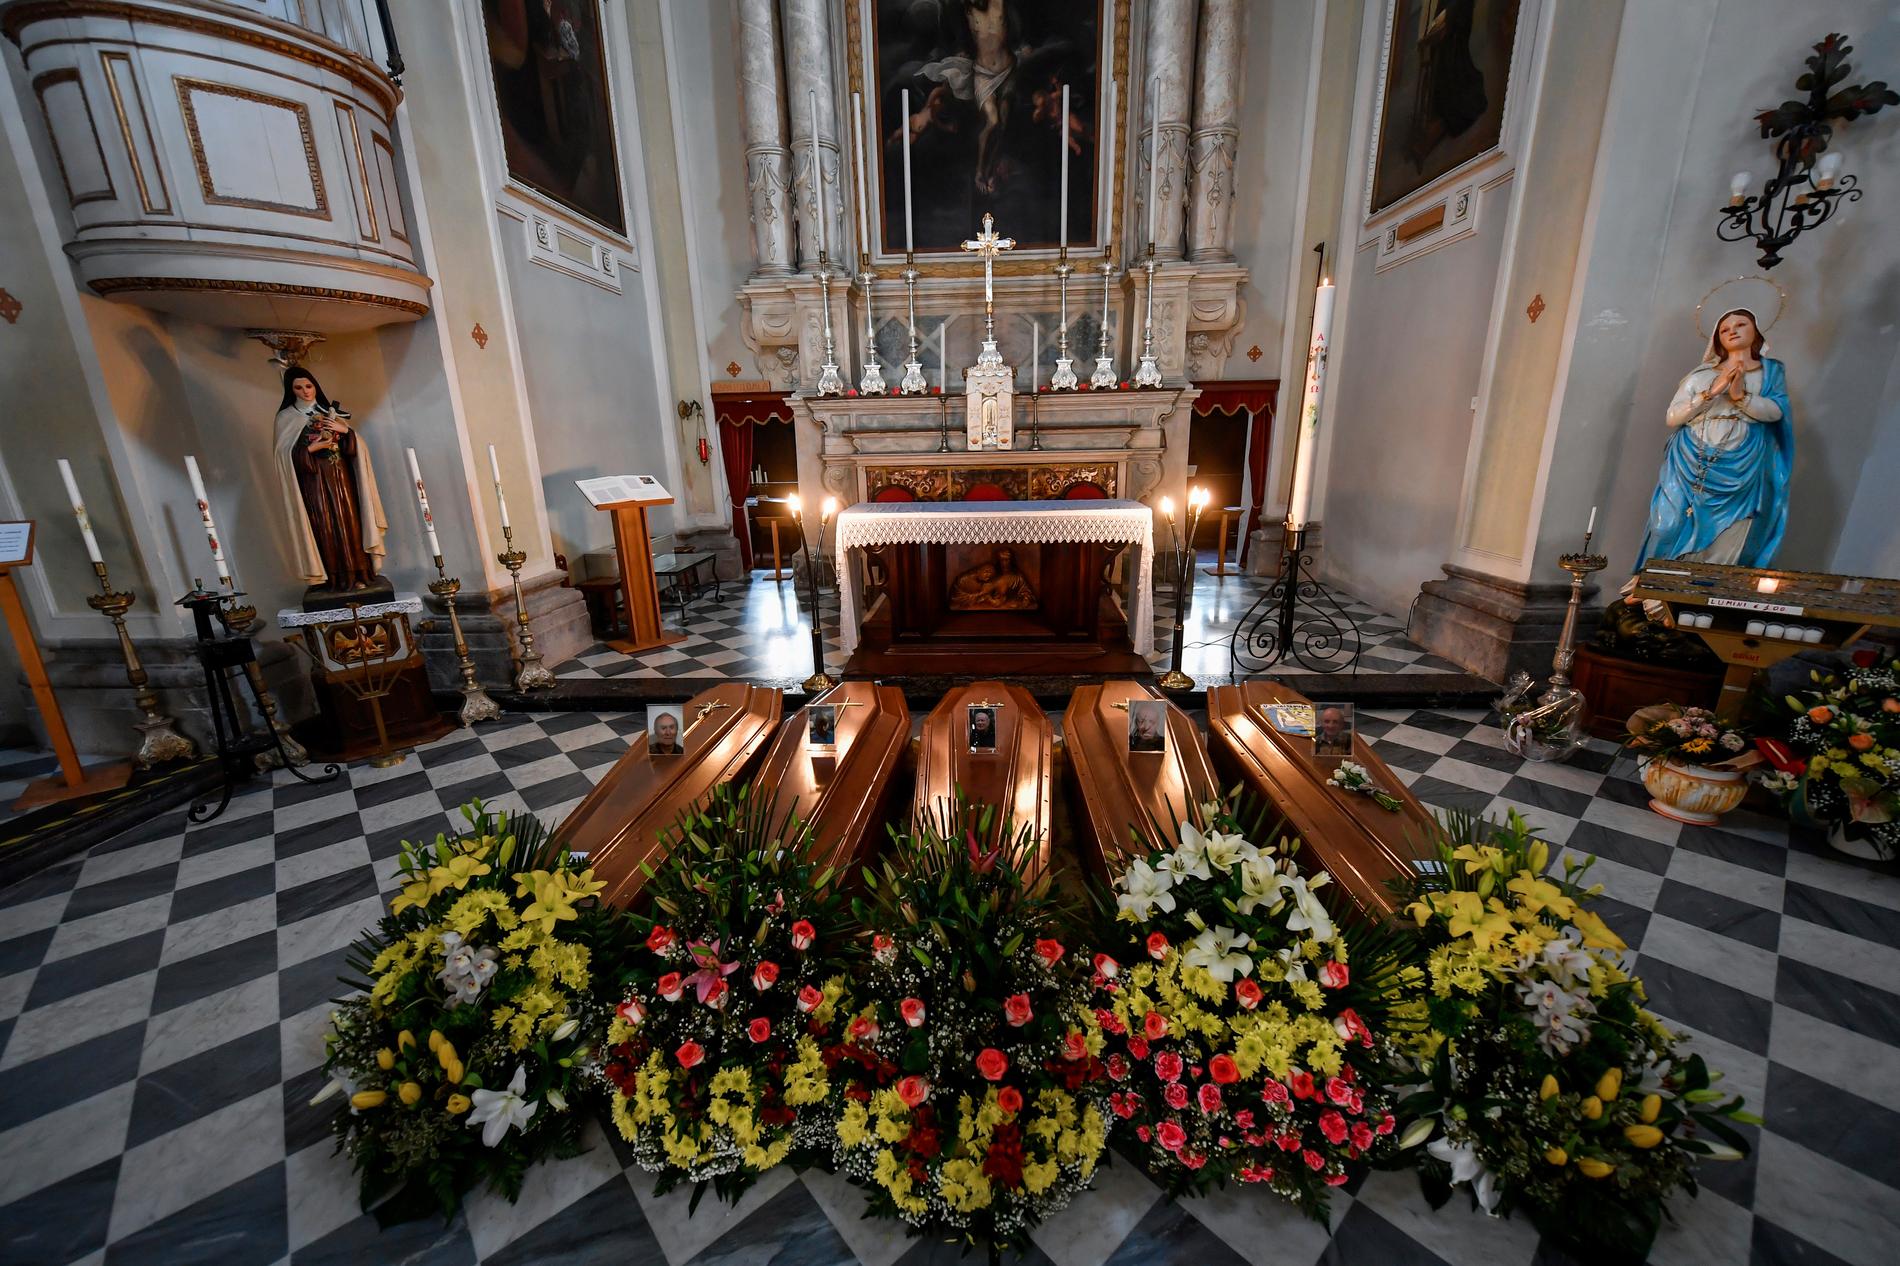 Kistor i en kyrka i närheten av Bergamo i norra Italien, i väntan på begravning.